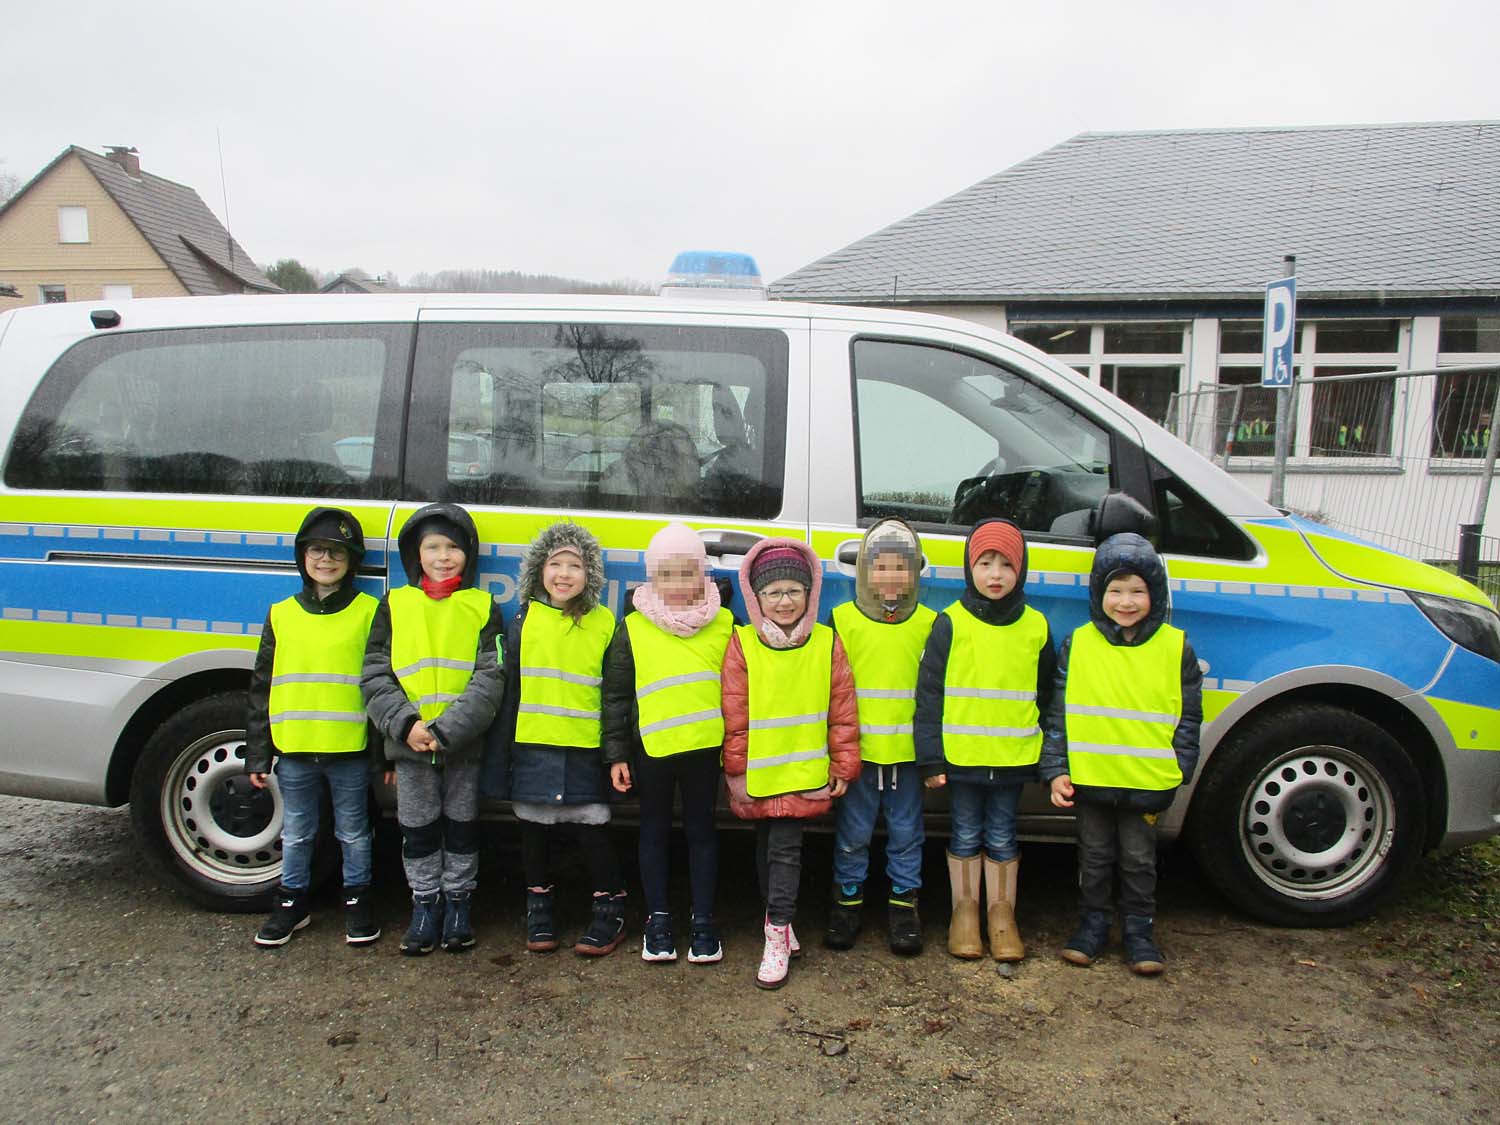 8 Kinder stehen vor einem Polizeiwagen